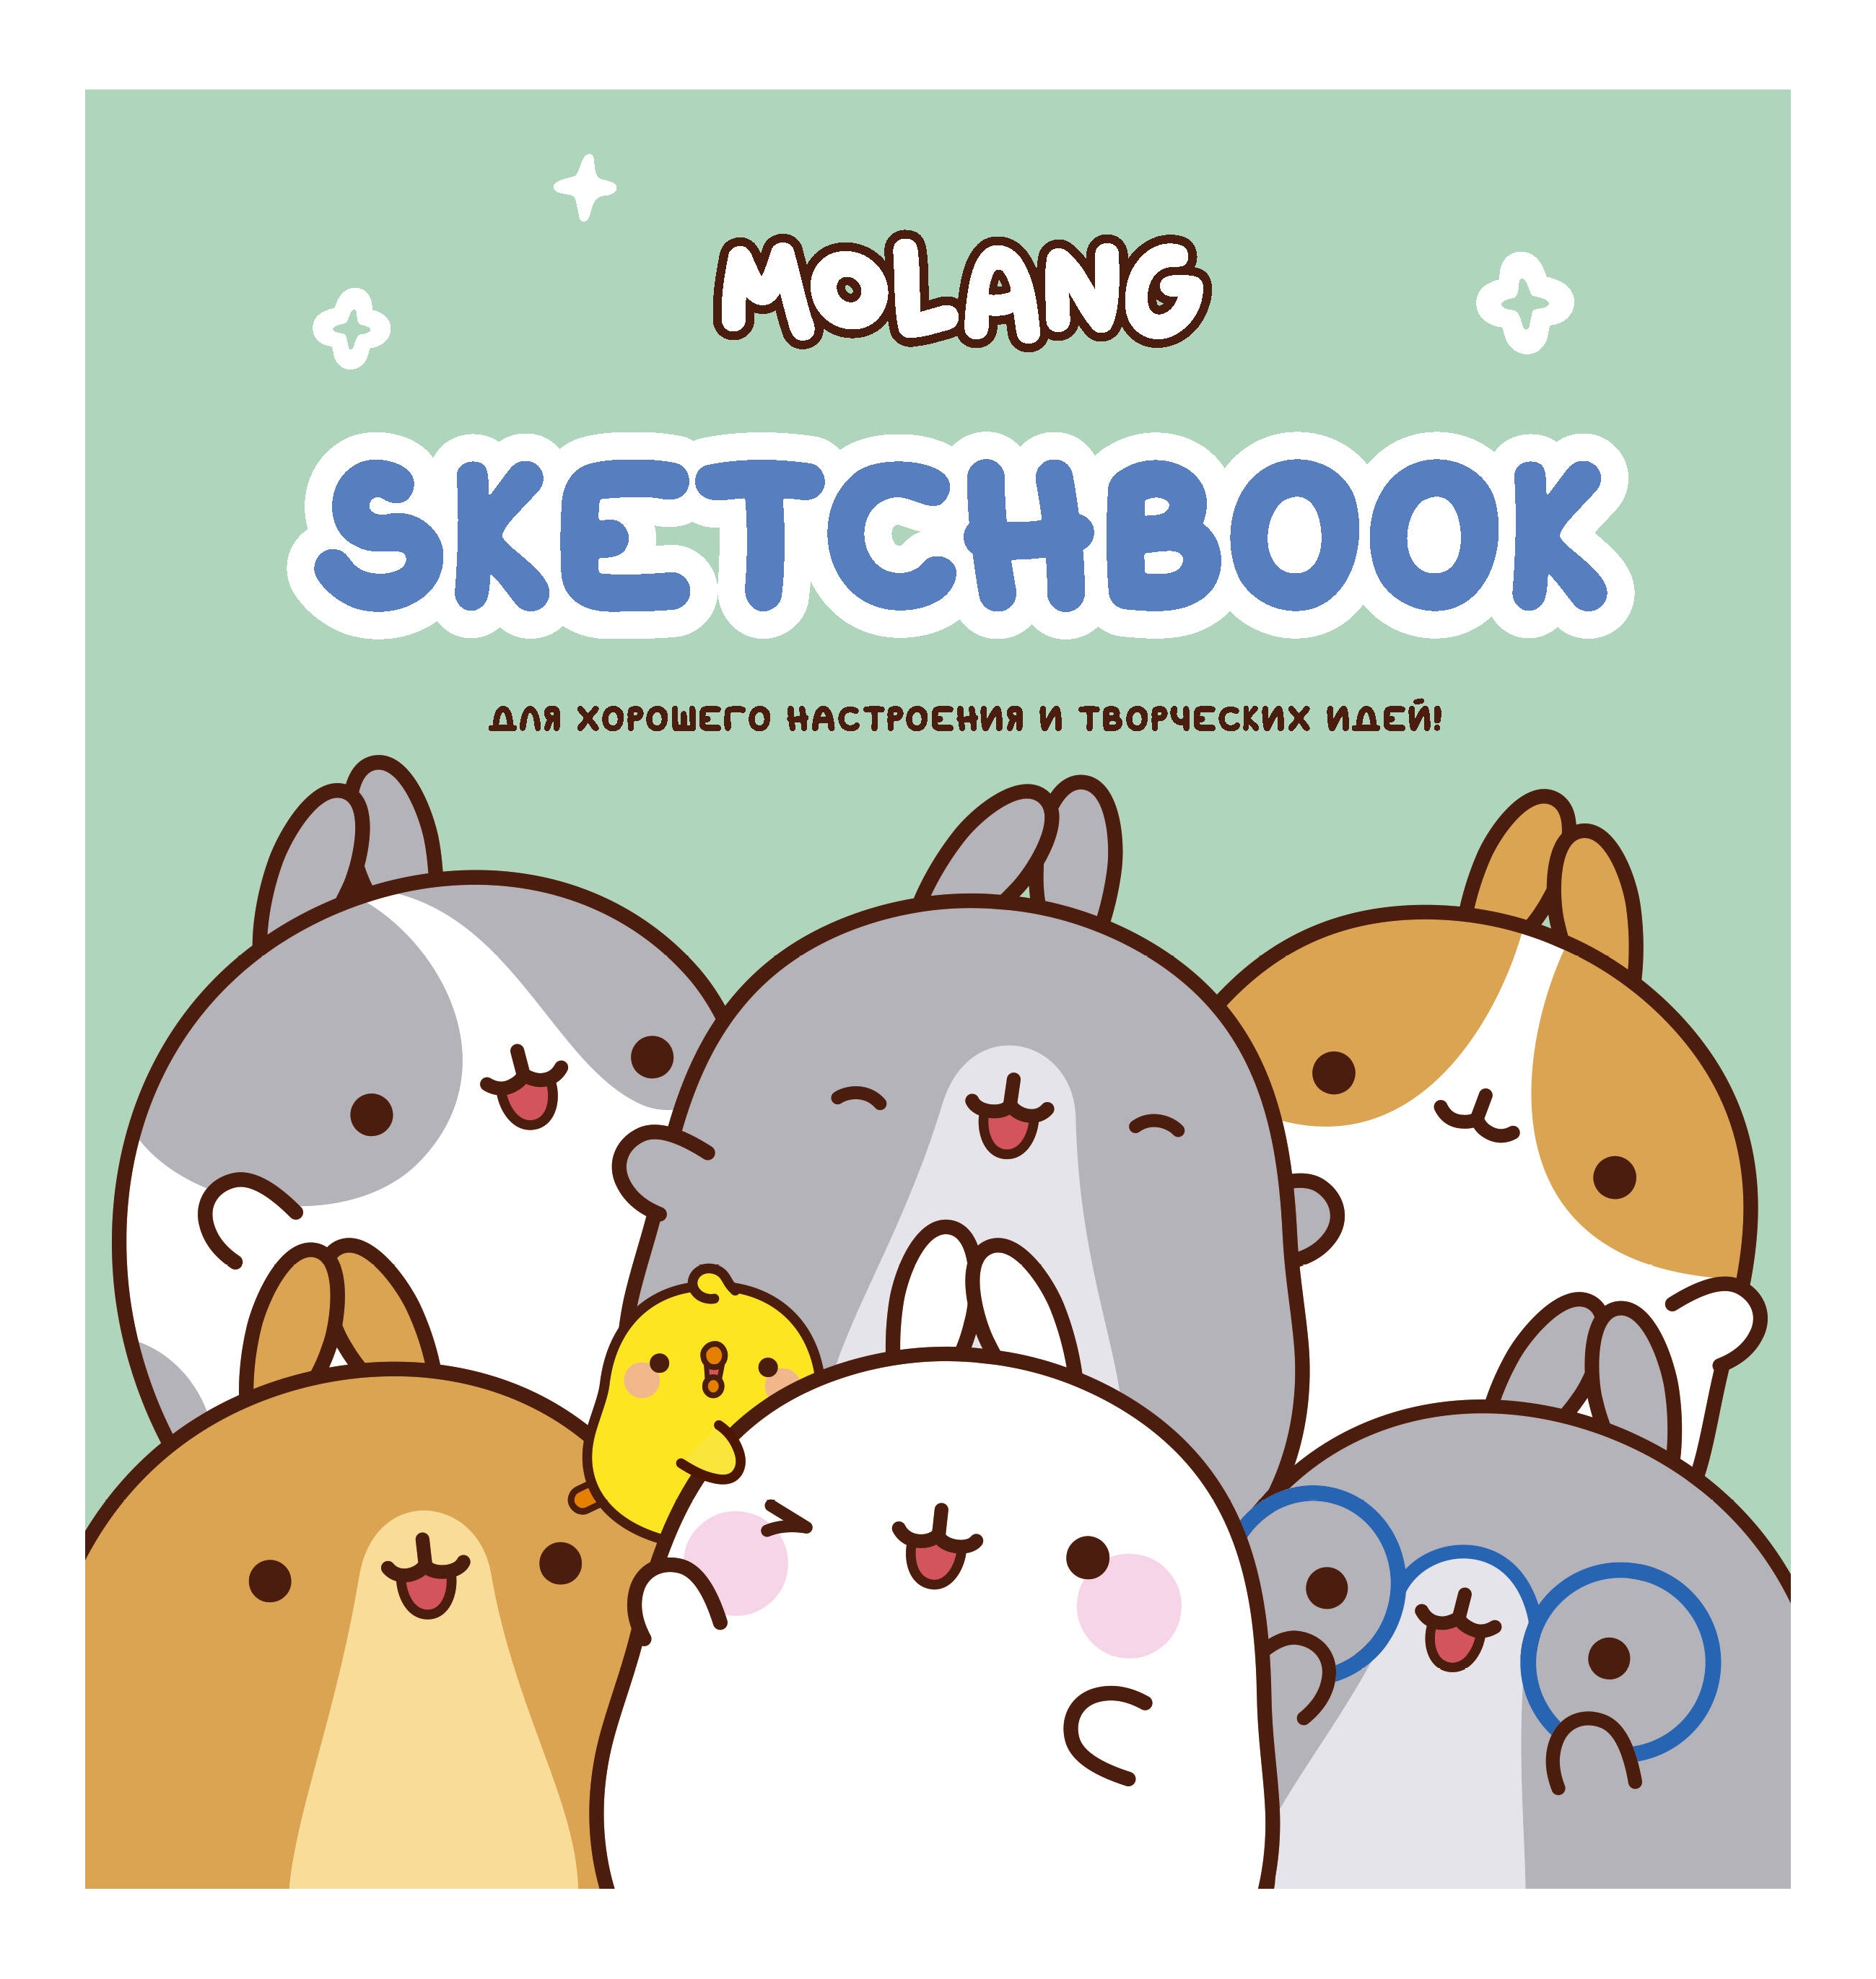 Скетчбук Molang Для хорошего настроения и творческих идей! (бирюзовый)